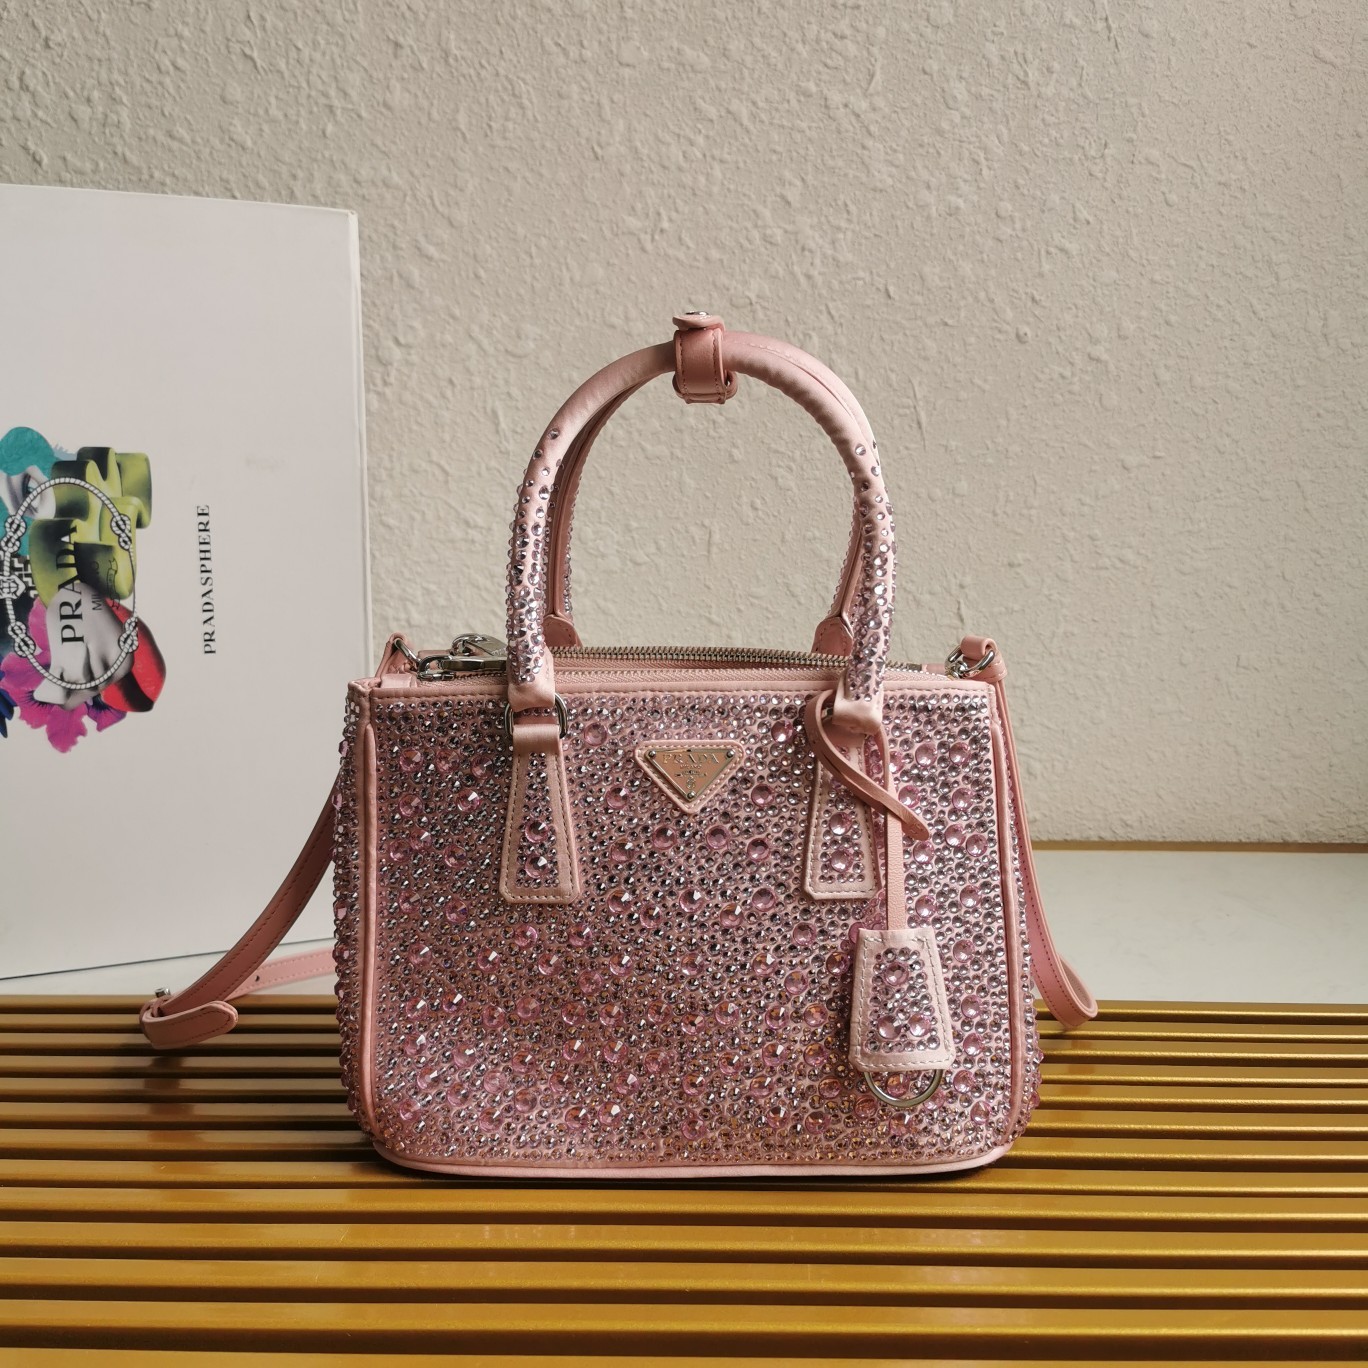 A bag Galleria Saffiano Leather Tote 1BA896 24.5 cm